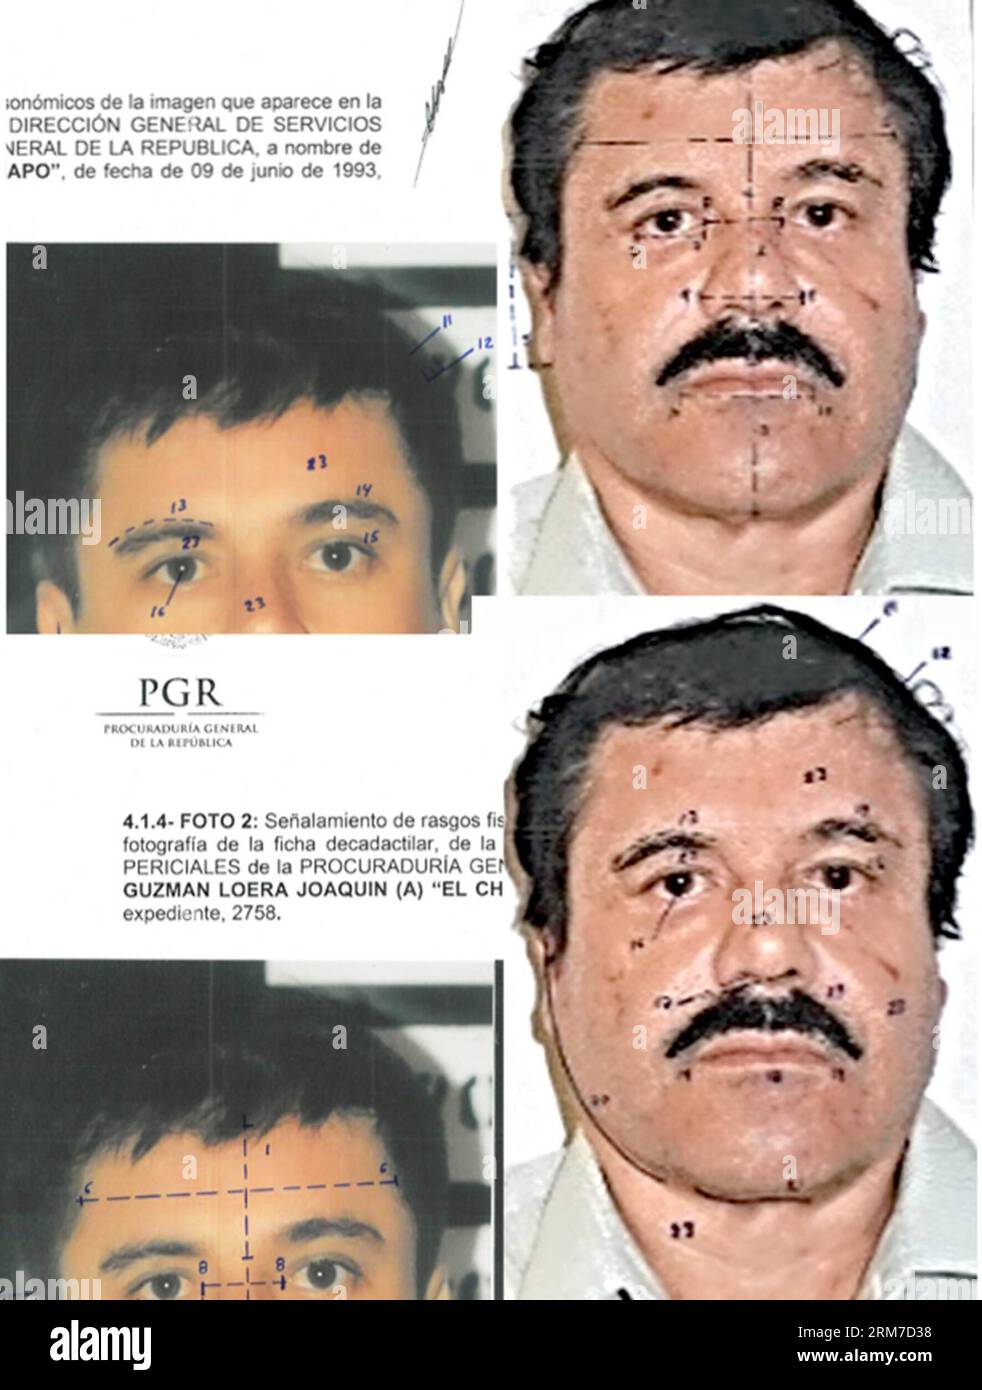 (140226) -- MEXICO, 26 février 2014 (Xinhua) -- ce combo de photographies publiées par le Bureau du procureur général (PGR) du Mexique avec des marques cartographiques d'identification faites par la source pour souligner les similitudes dans les mesures du visage, montre Joaquin El Chapo Guzman, en utilisant des images faites de ses détentions de 1993 et 2014. Le chef du cartel Sinaloa a été soumis à un prélèvement buccal, à une étude d'identité phisiognomique et à un test de 10 empreintes digitales. Mardi, les tribunaux fédéraux au Mexique ont officiellement inculpé Joaquin El Chapo Guzman, le chef capturé du cartel de la drogue de Sinaloa, de crime organisé et de trafic de drogue. (X Banque D'Images